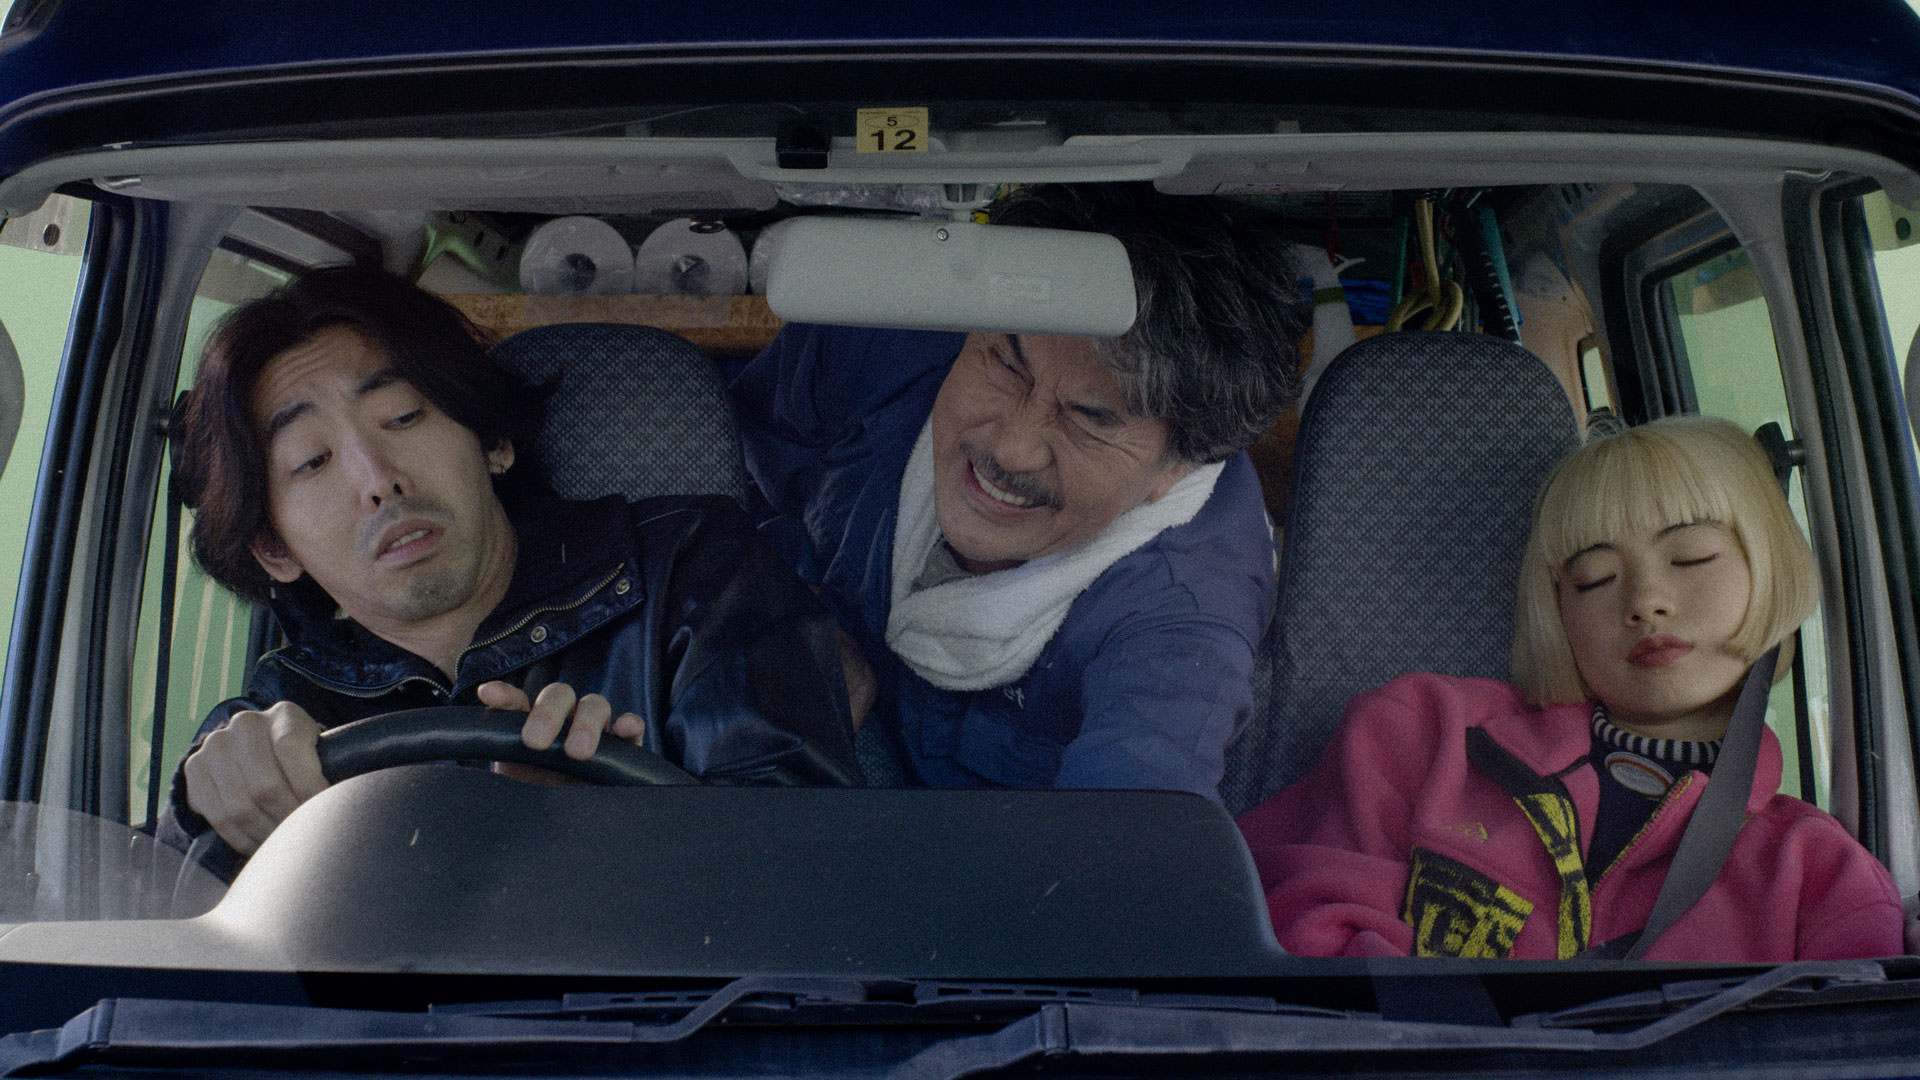 کوجی یاکوشو، آئویی یامادا و توکیو ایموتو نشسته داخل یک ون کوچک در نمایی از فیلم روزهای عالی به کارگردانی ویم وندرس